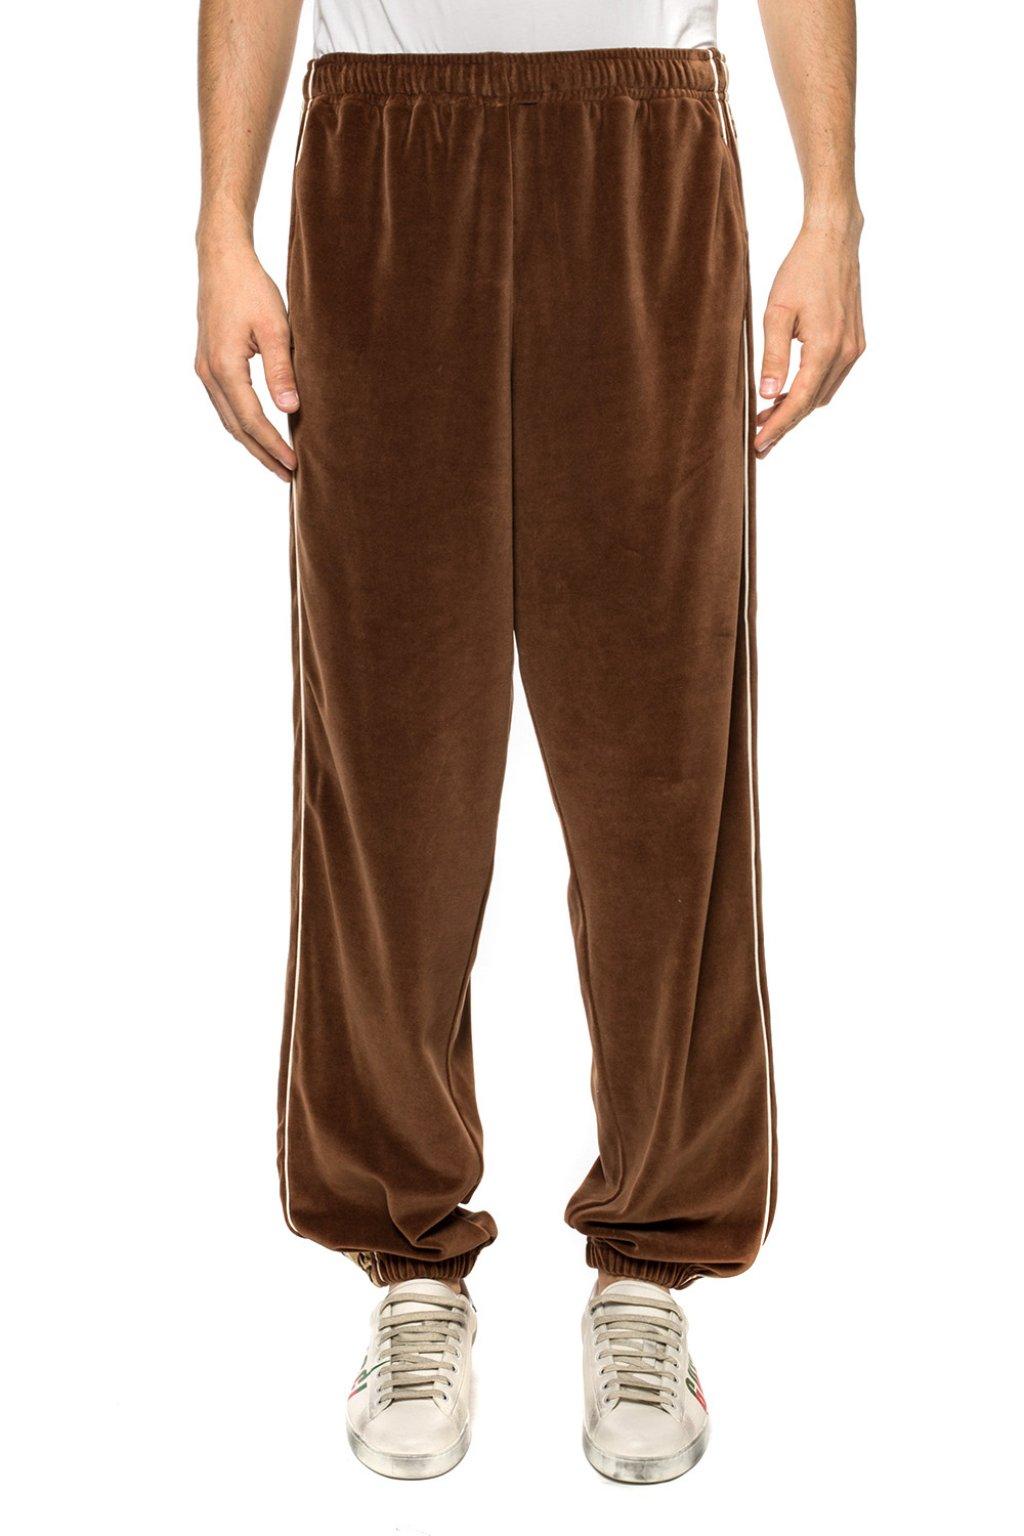 Gucci Velvet jogging Pants in Navy Blue Brown (Brown) for Men - Lyst